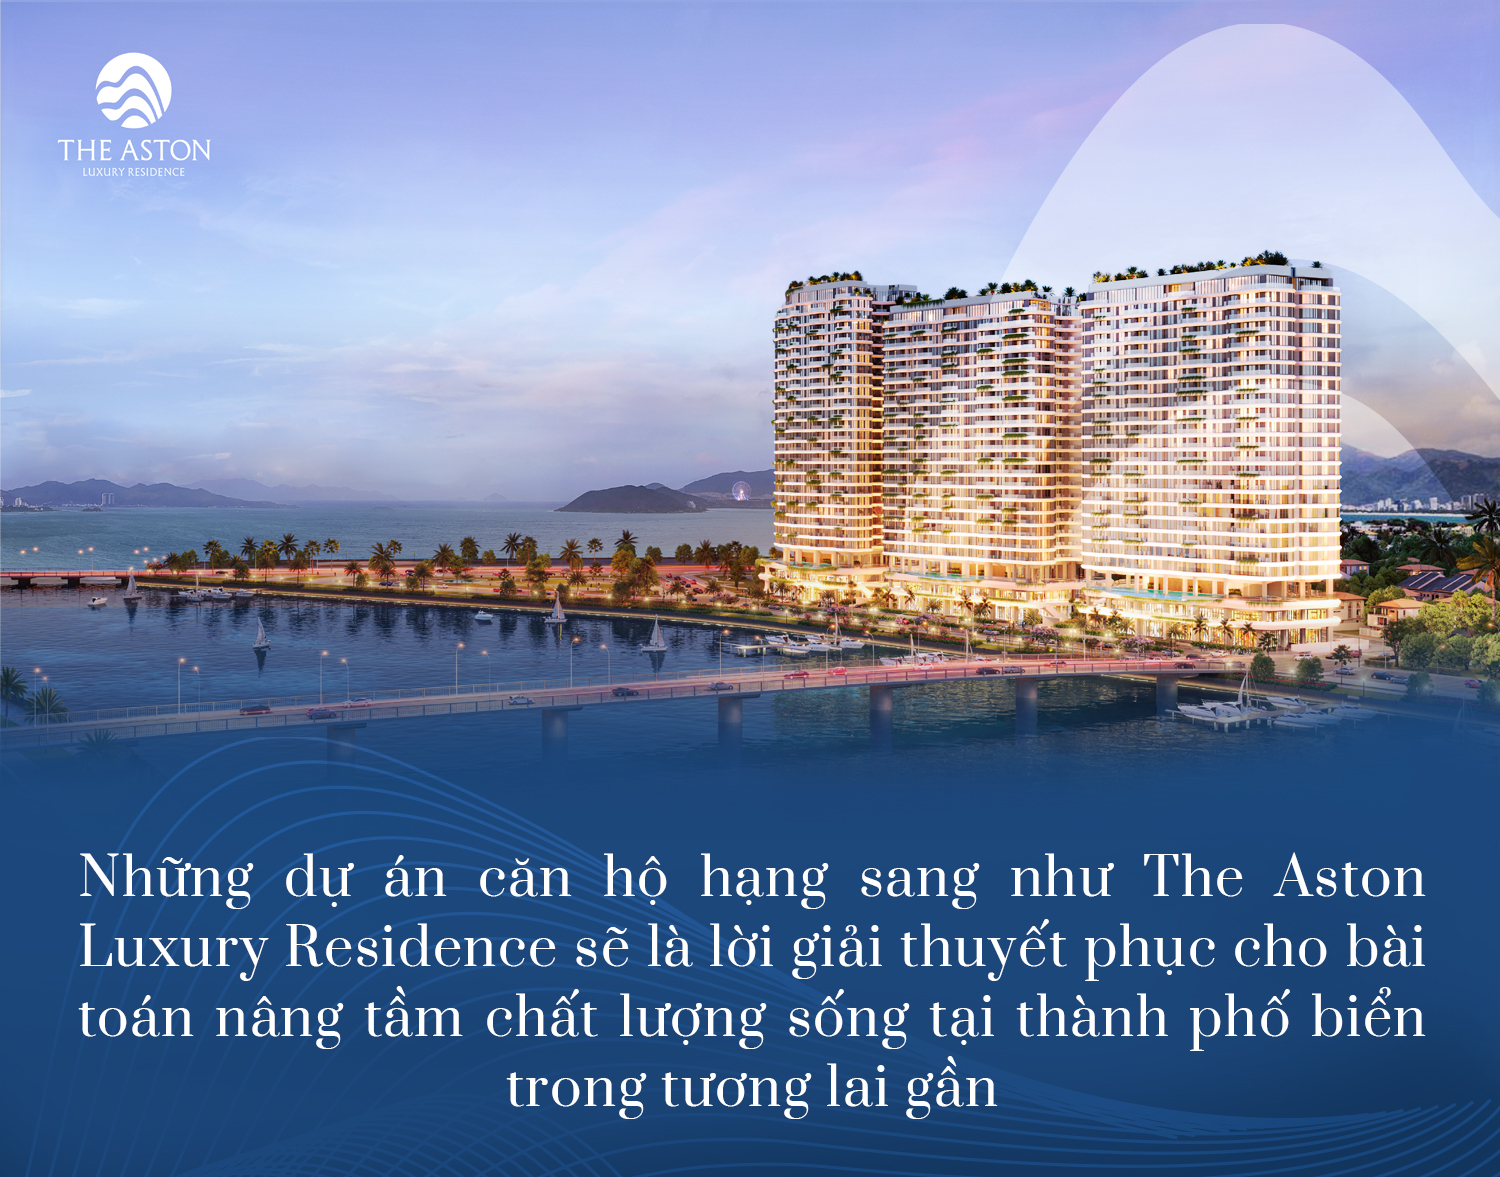 Phát triển những dự án bất động sản hạng sang - Yếu tố tiên quyết để nâng tầm vị thế Nha Trang - Ảnh 5.